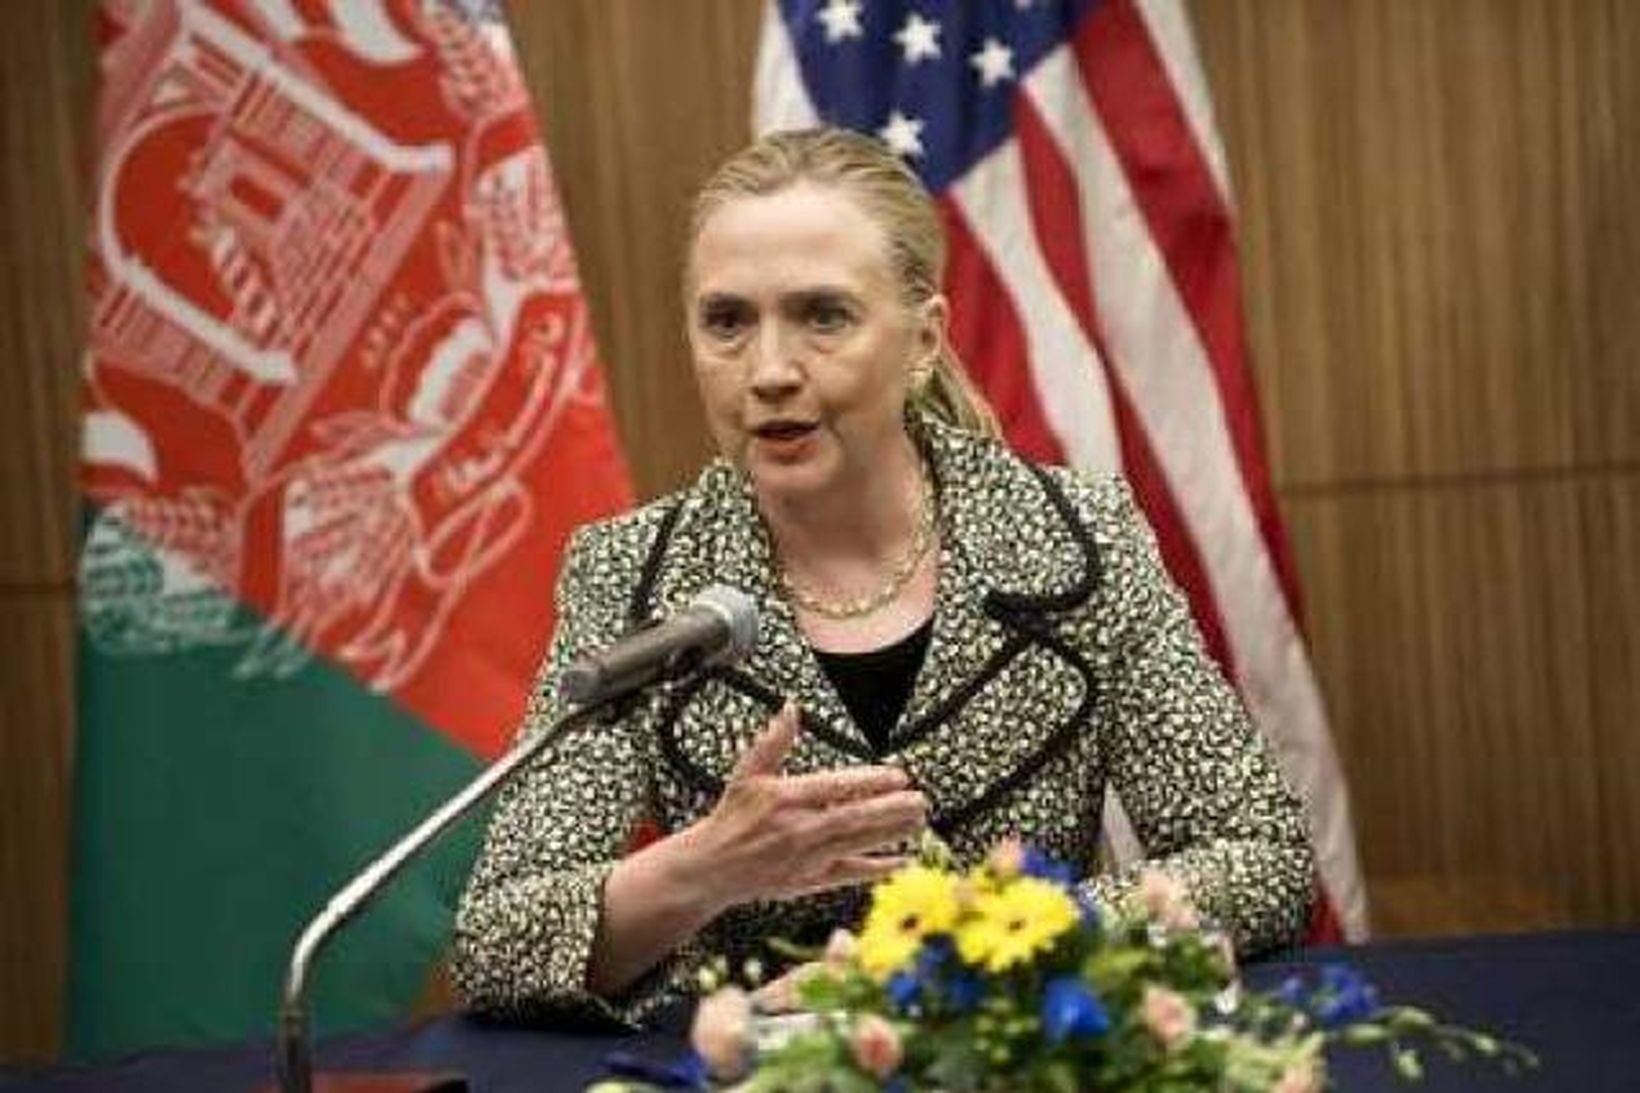 Hillary Clinton, utanríkisráðherra Bandaríkjanna, tekur þátt í ráðstefnunni í Japan.